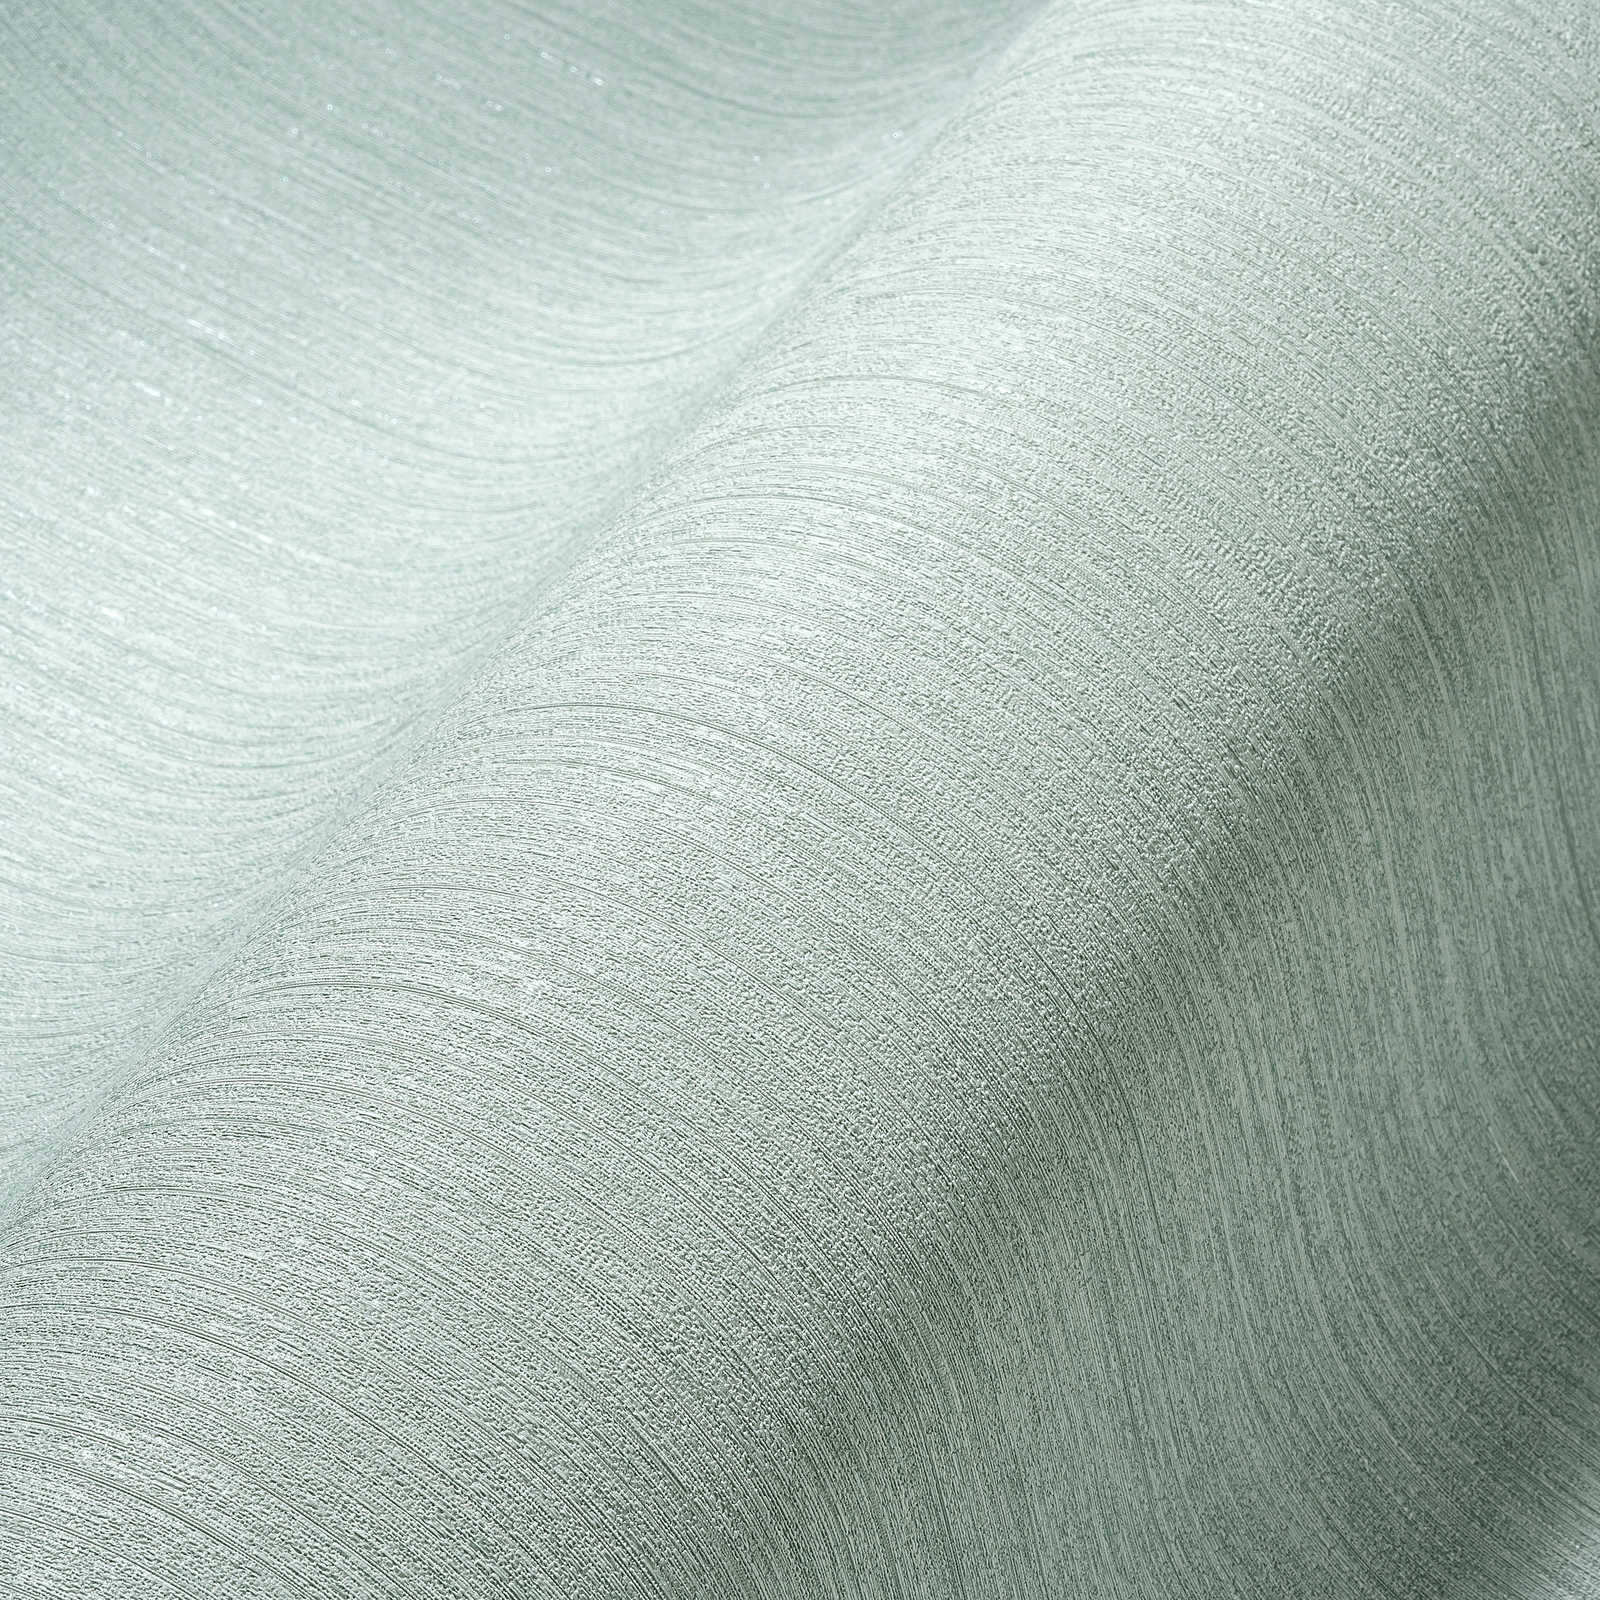             wallpaper mint green plain, silk matte with texture pattern
        